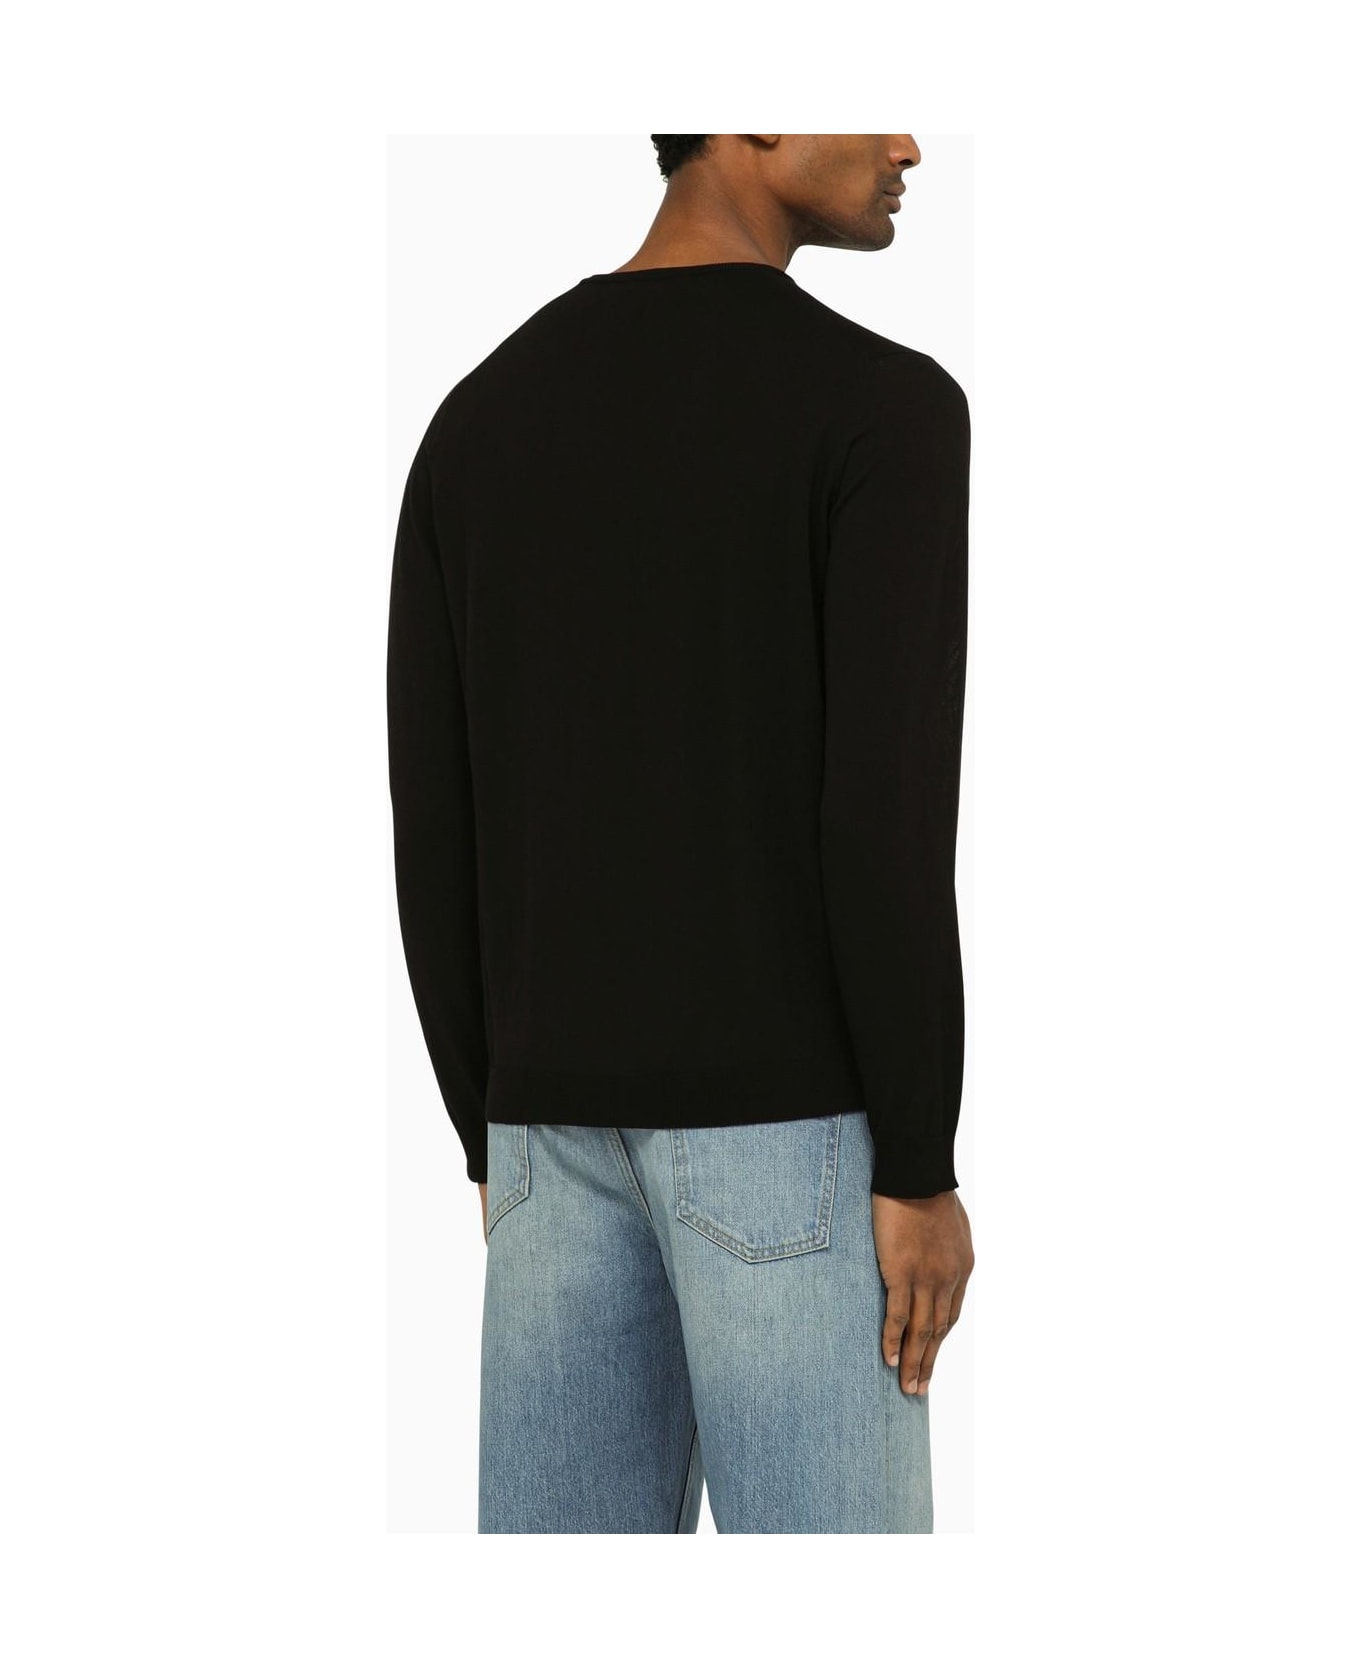 Roberto Collina Black Cotton Crew-neck Sweater - Nero ニットウェア